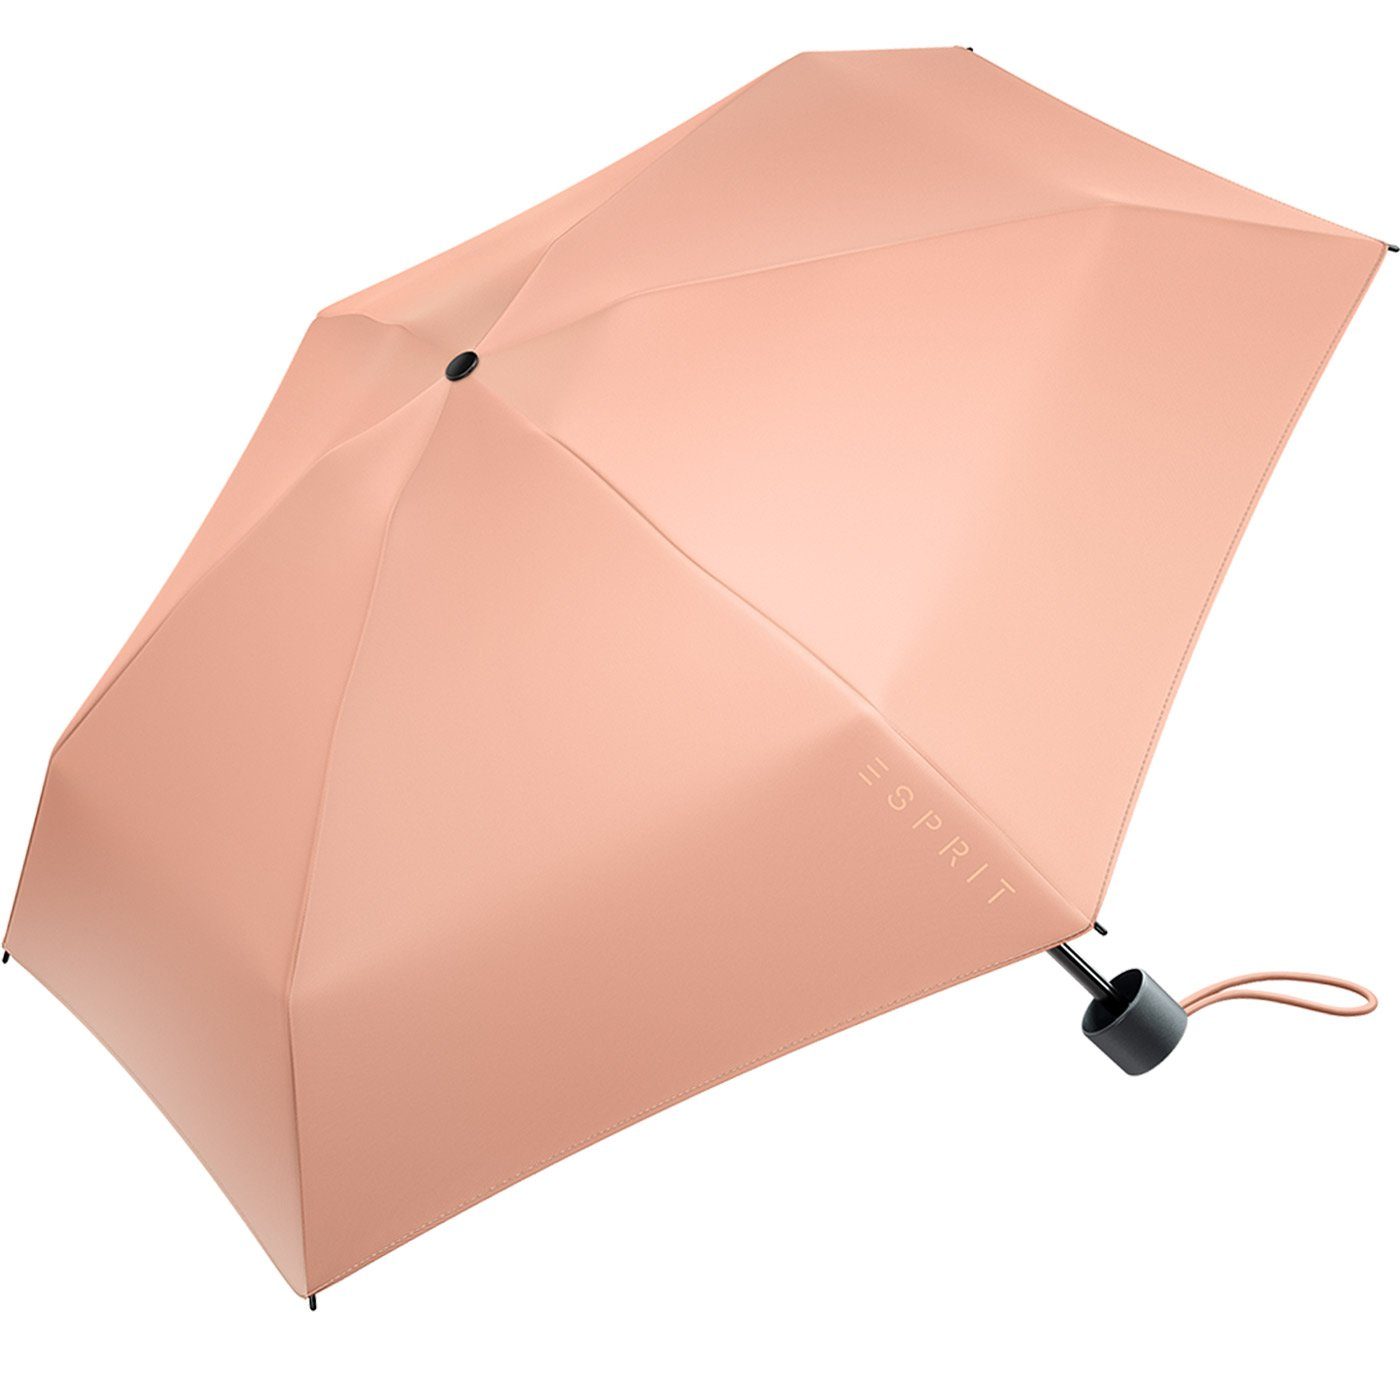 FJ Super Mini 2022, in Petito den Taschenregenschirm Damen Regenschirm Trendfarben pfirsich Esprit winzig neuen klein,